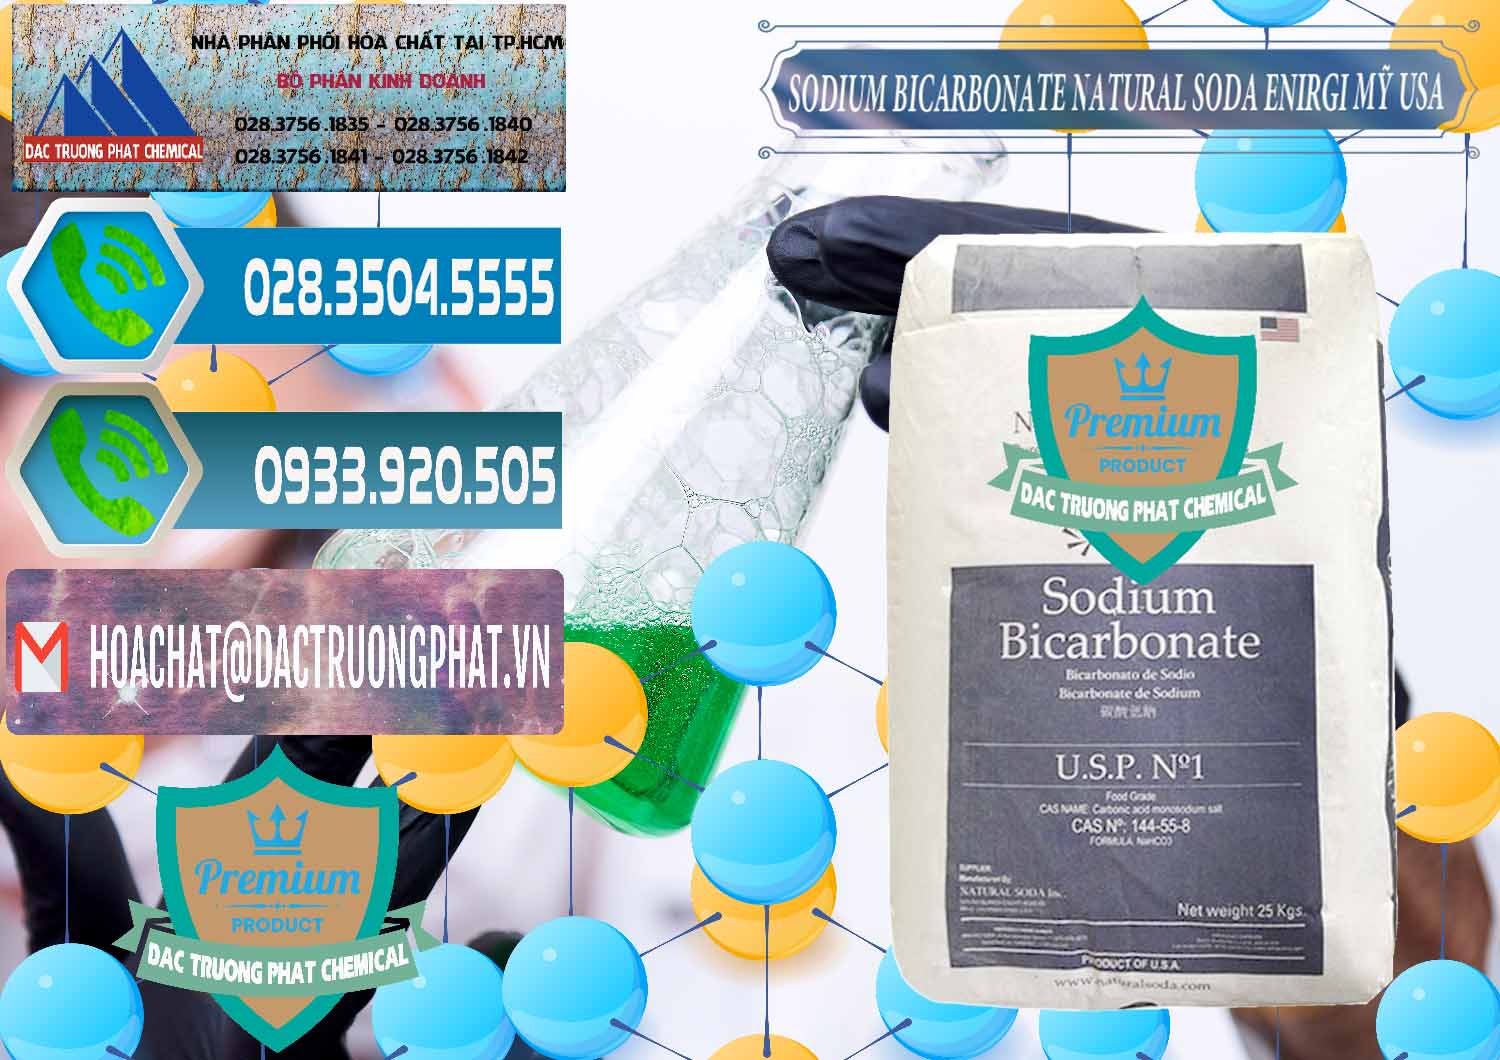 Nhập khẩu ( bán ) Sodium Bicarbonate – Bicar NaHCO3 Food Grade Natural Soda Enirgi Mỹ USA - 0257 - Chuyên bán và cung cấp hóa chất tại TP.HCM - congtyhoachat.net